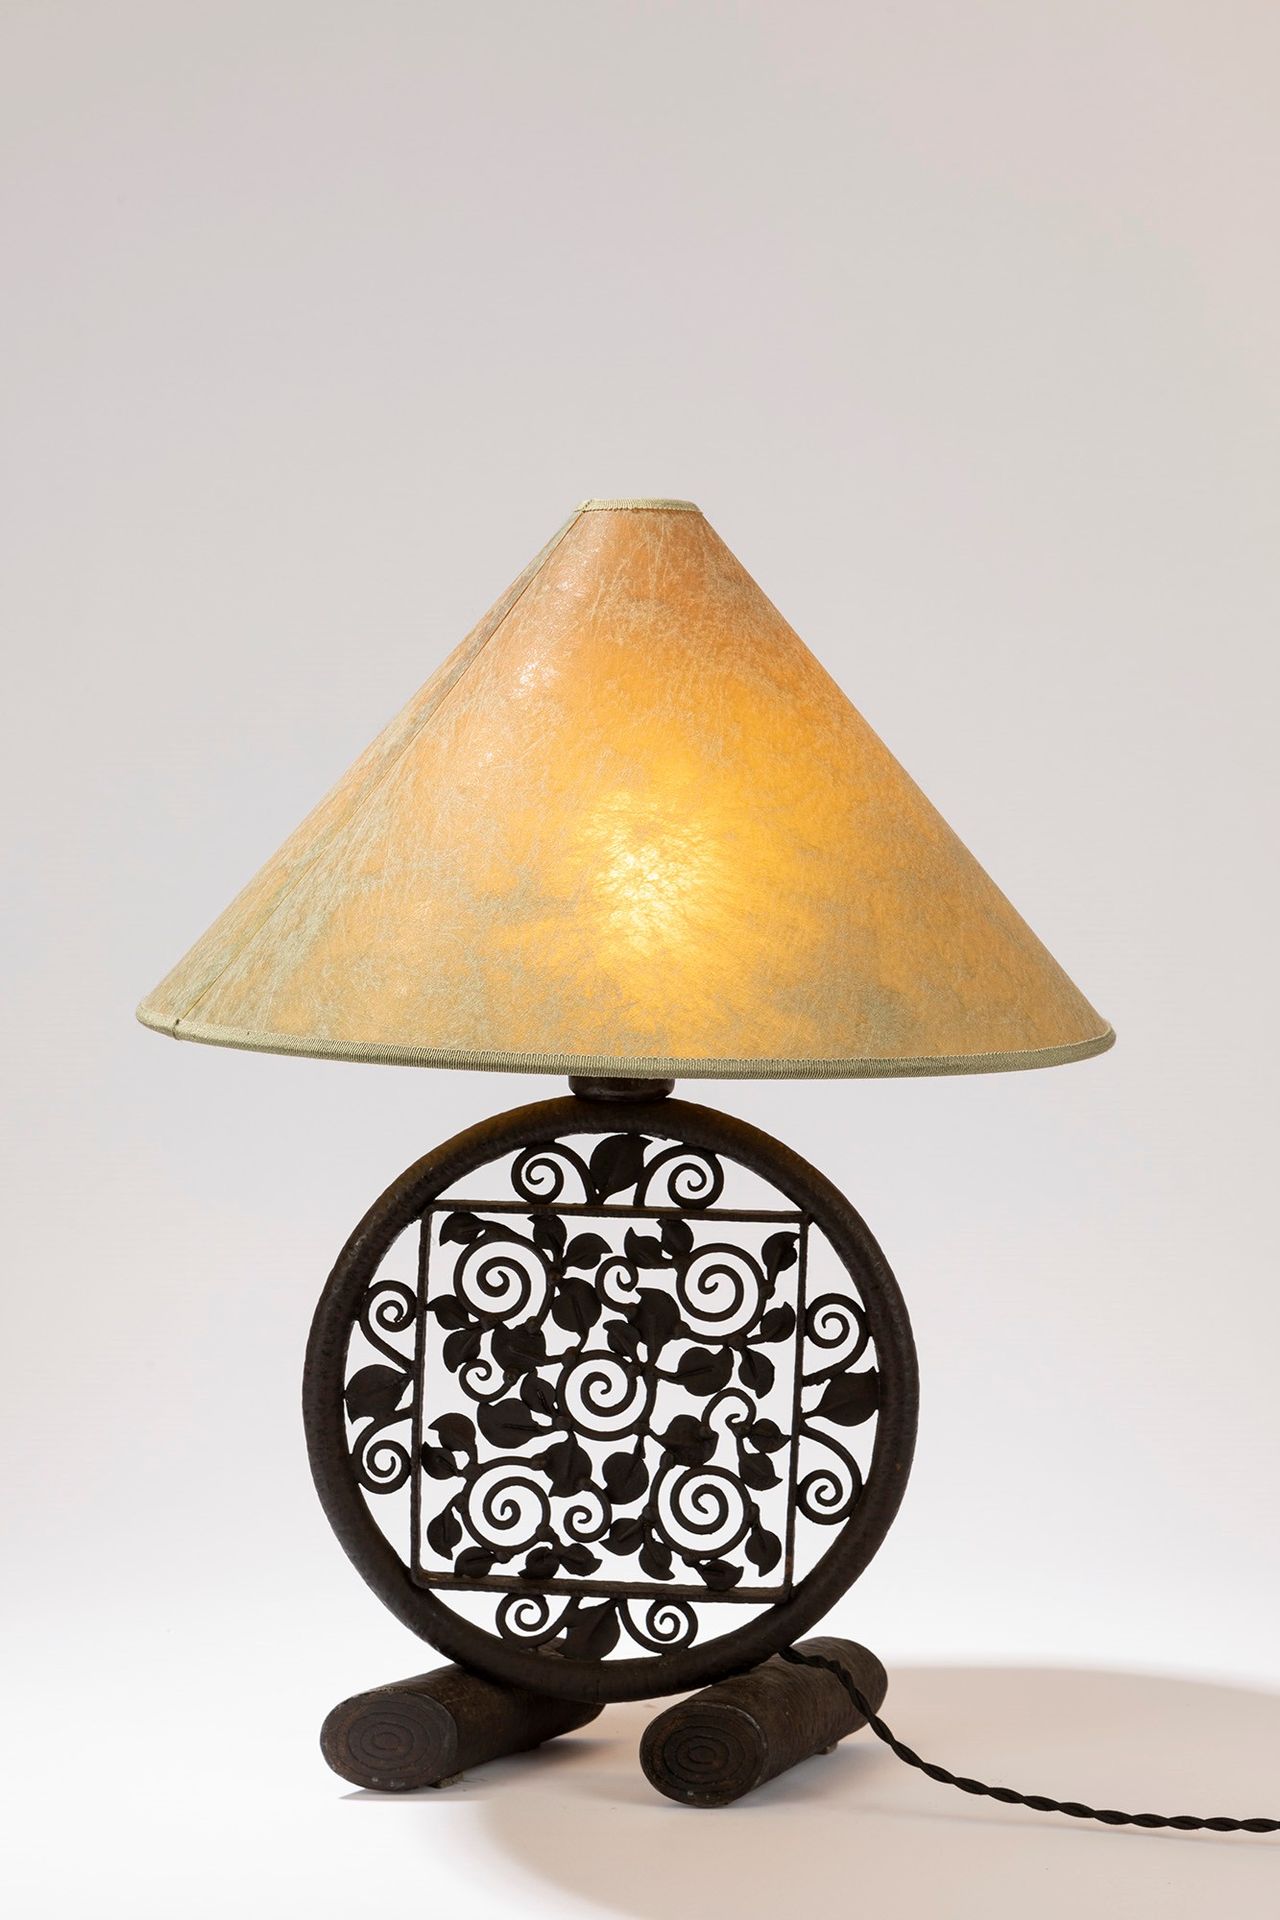 FRENCH MANUFACTURE Lampe de table, période 20's

h cm 50 x 37
fer forgé avec un &hellip;